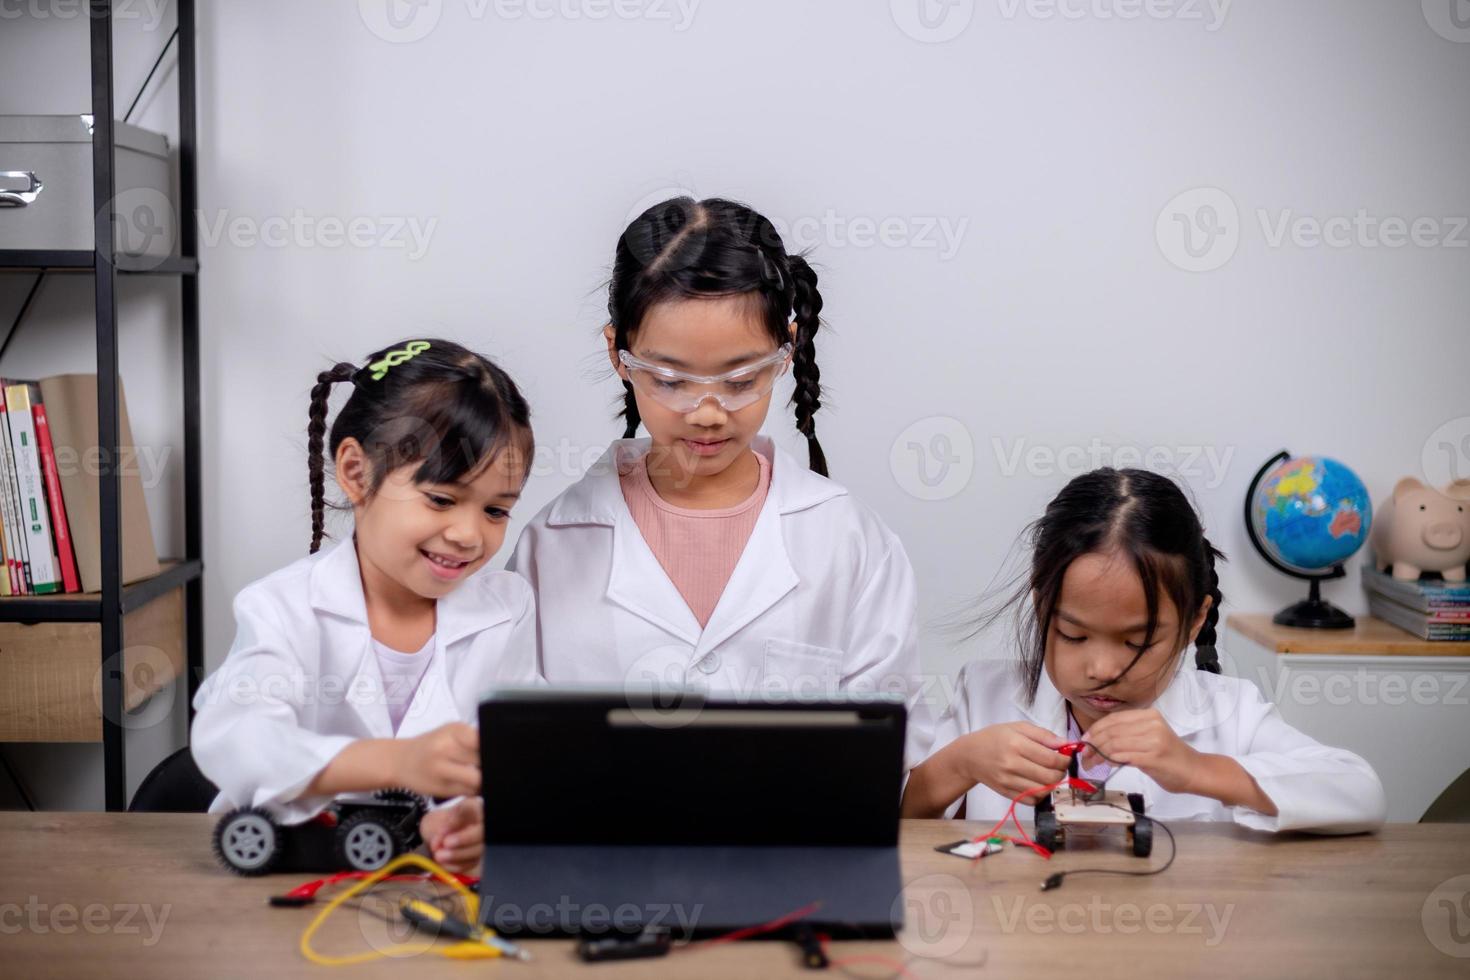 los estudiantes asiáticos aprenden en casa codificando automóviles robot y cables de placas electrónicas en tallo, vapor, ingeniería matemática, ciencia, tecnología, código informático en robótica para conceptos infantiles. foto